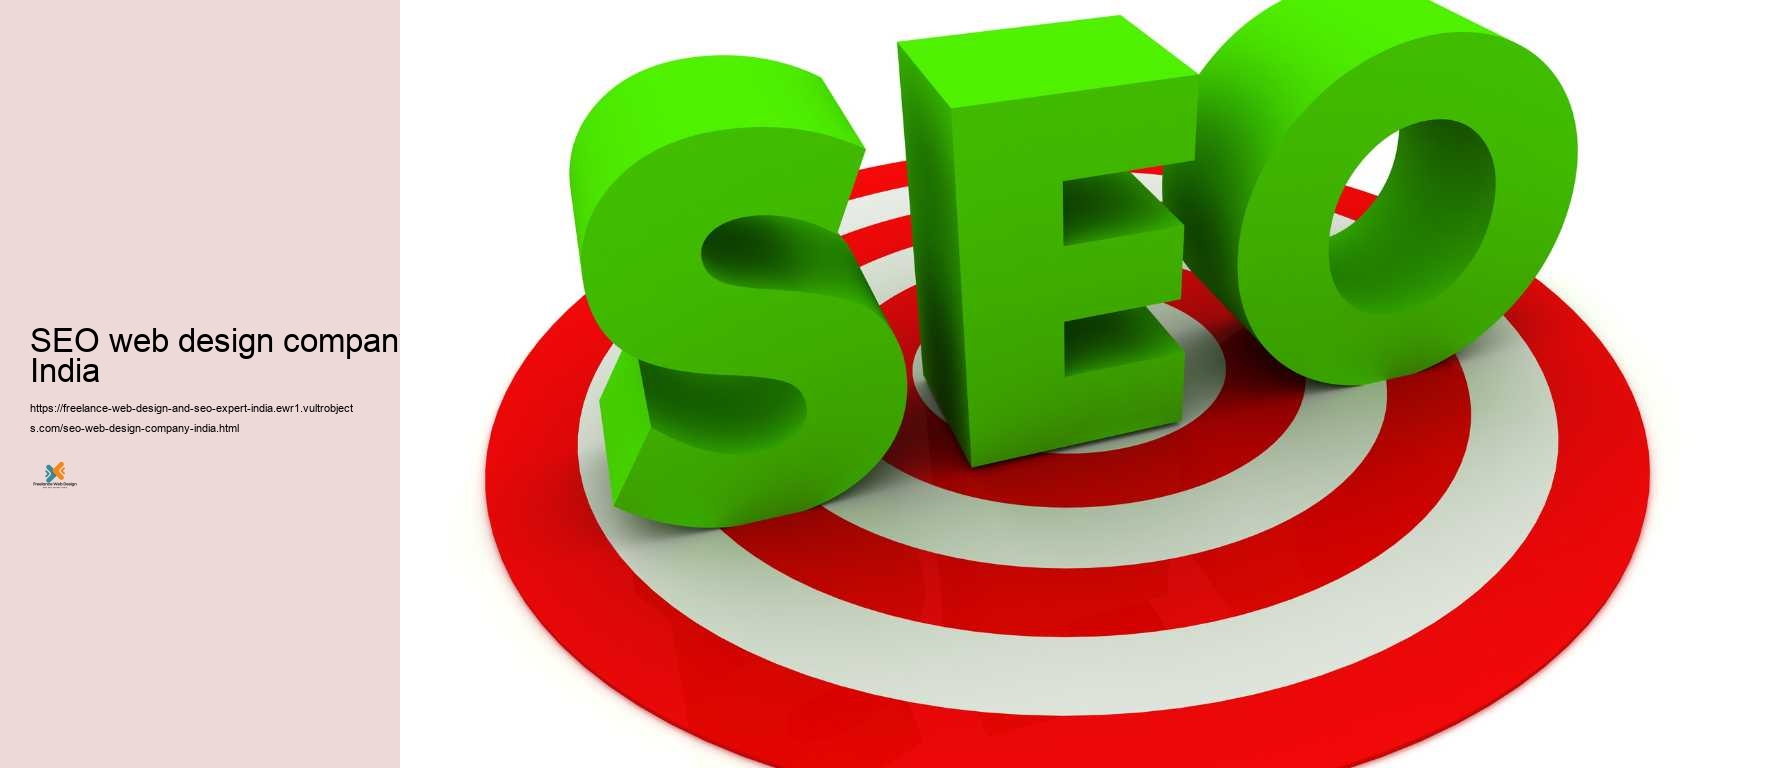 SEO web design company India